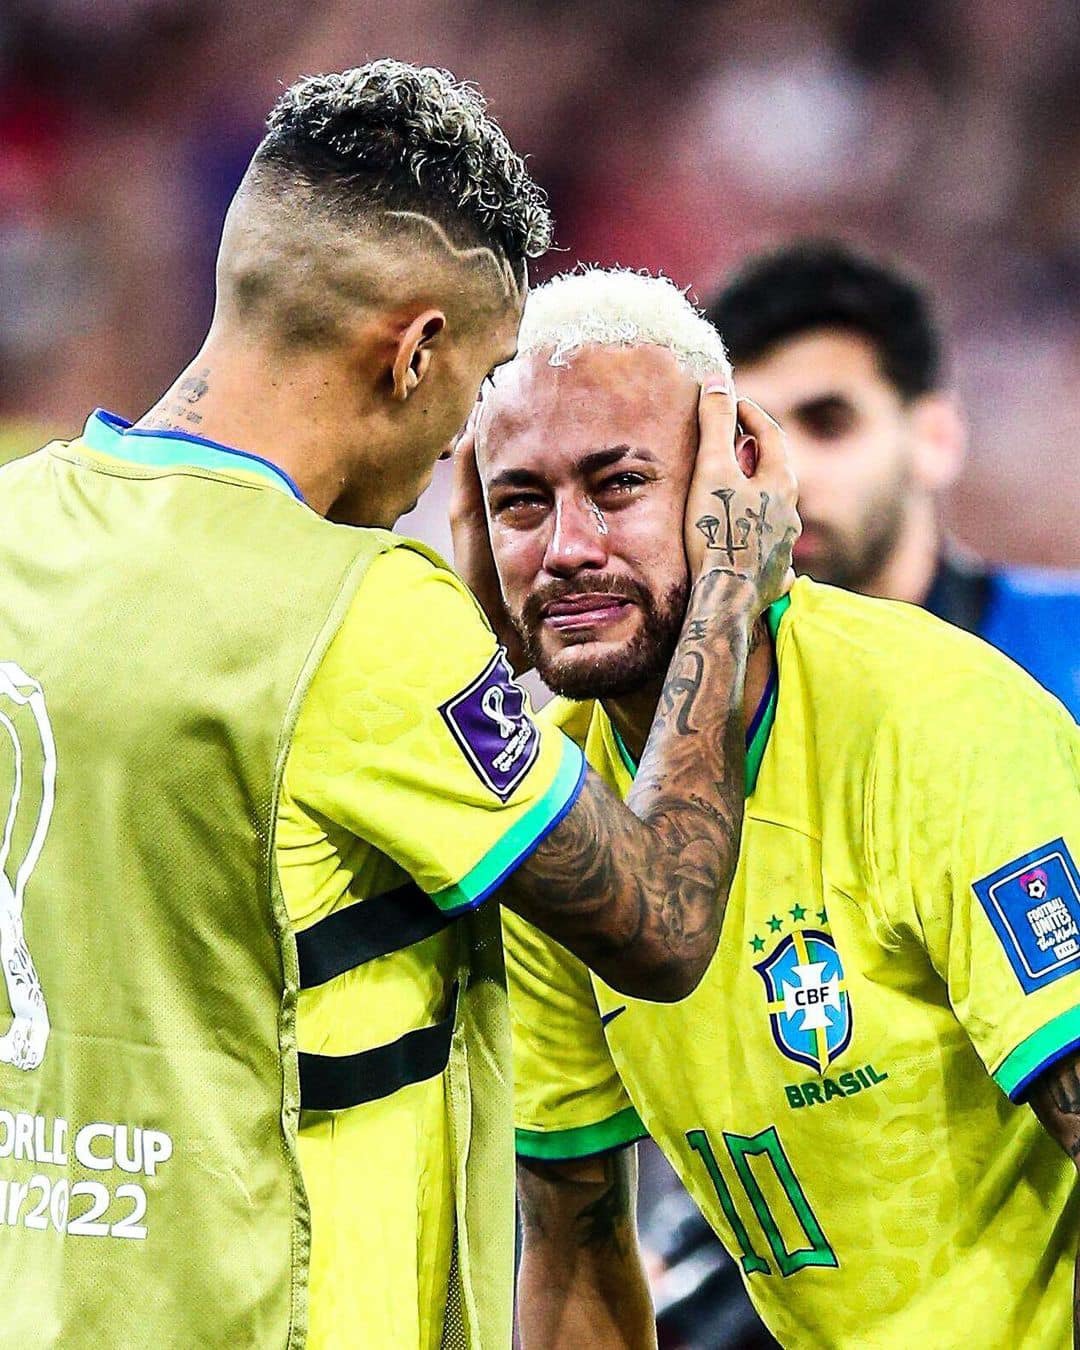 Hãy xem nước mắt của Neymar. Những khoảnh khắc đầy cảm xúc khiến bạn đồng cảm và nhận ra rằng cầu thủ cũng chỉ là con người. Không chỉ là một ngôi sao bóng đá, Neymar cũng có những giây phút yếu đuối.